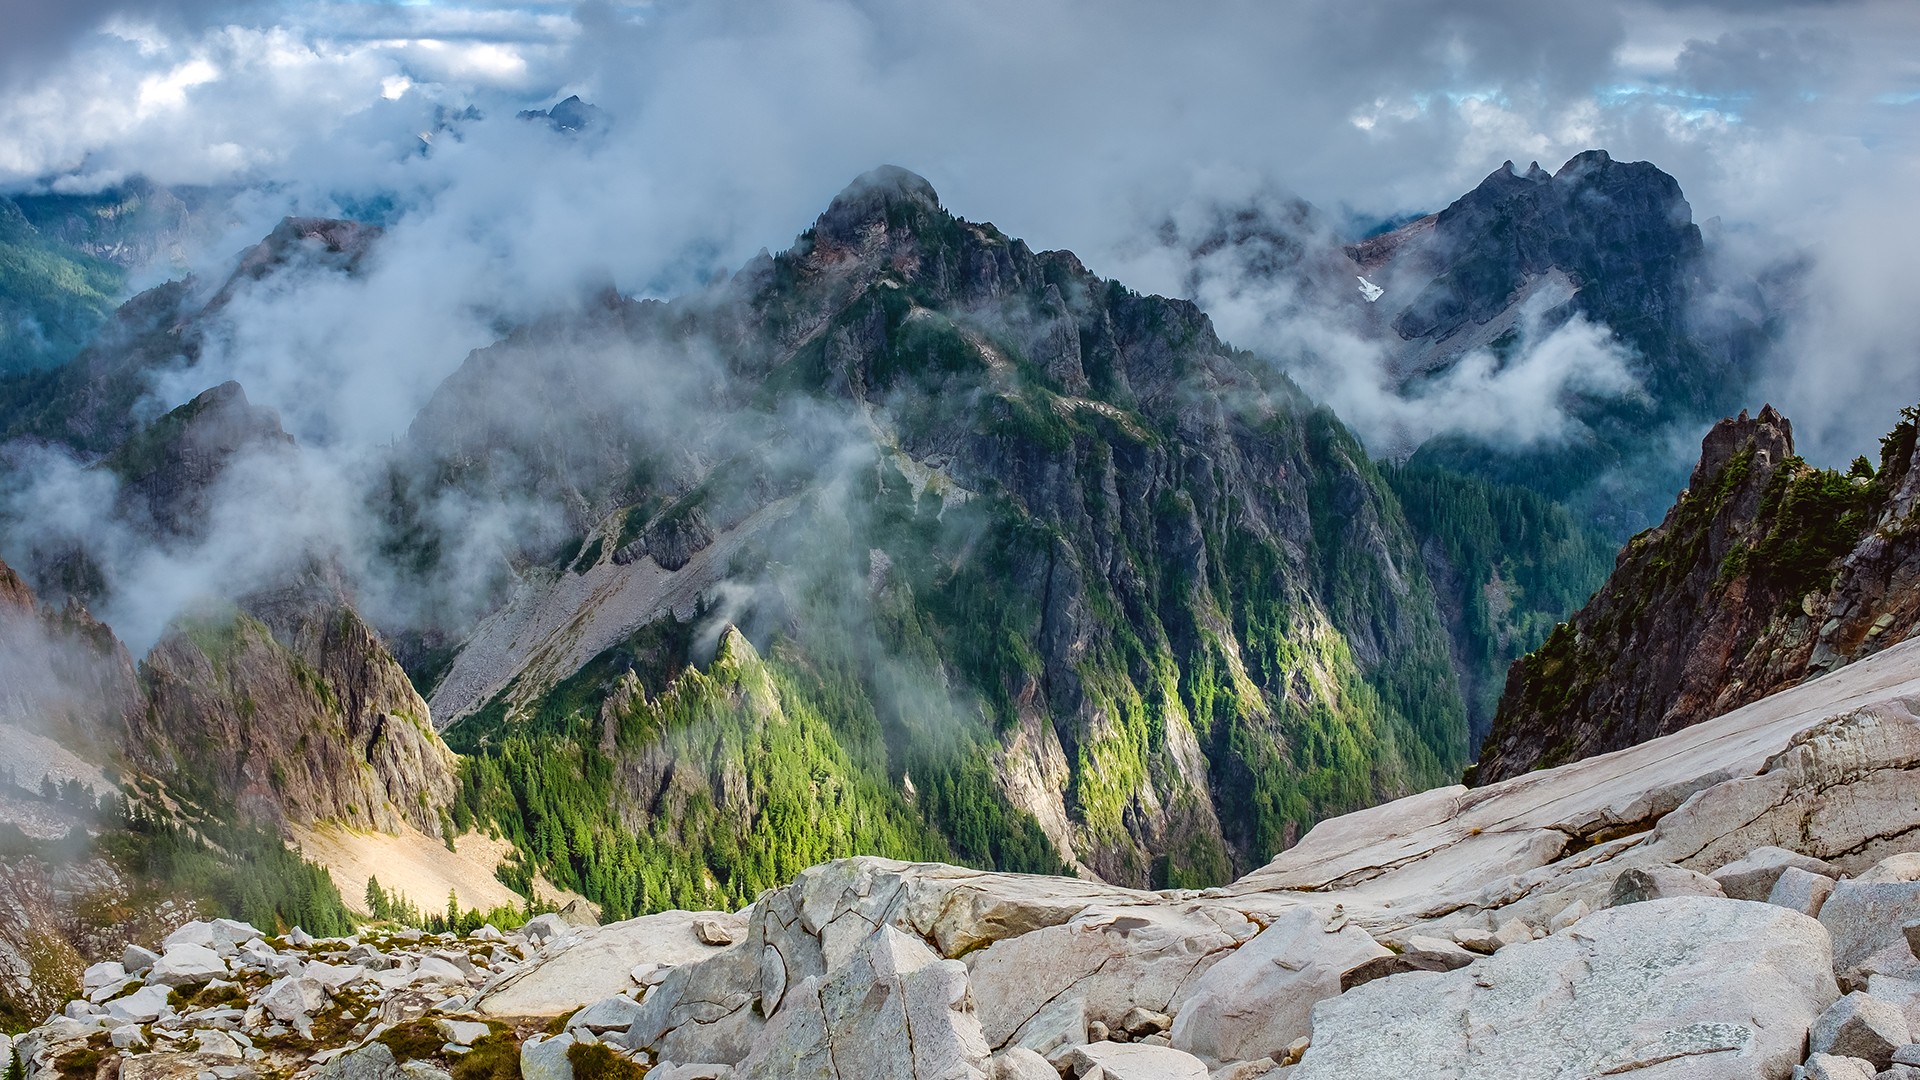 General 1920x1080 landscape mountains nature rocks clouds Washington State USA summit daylight